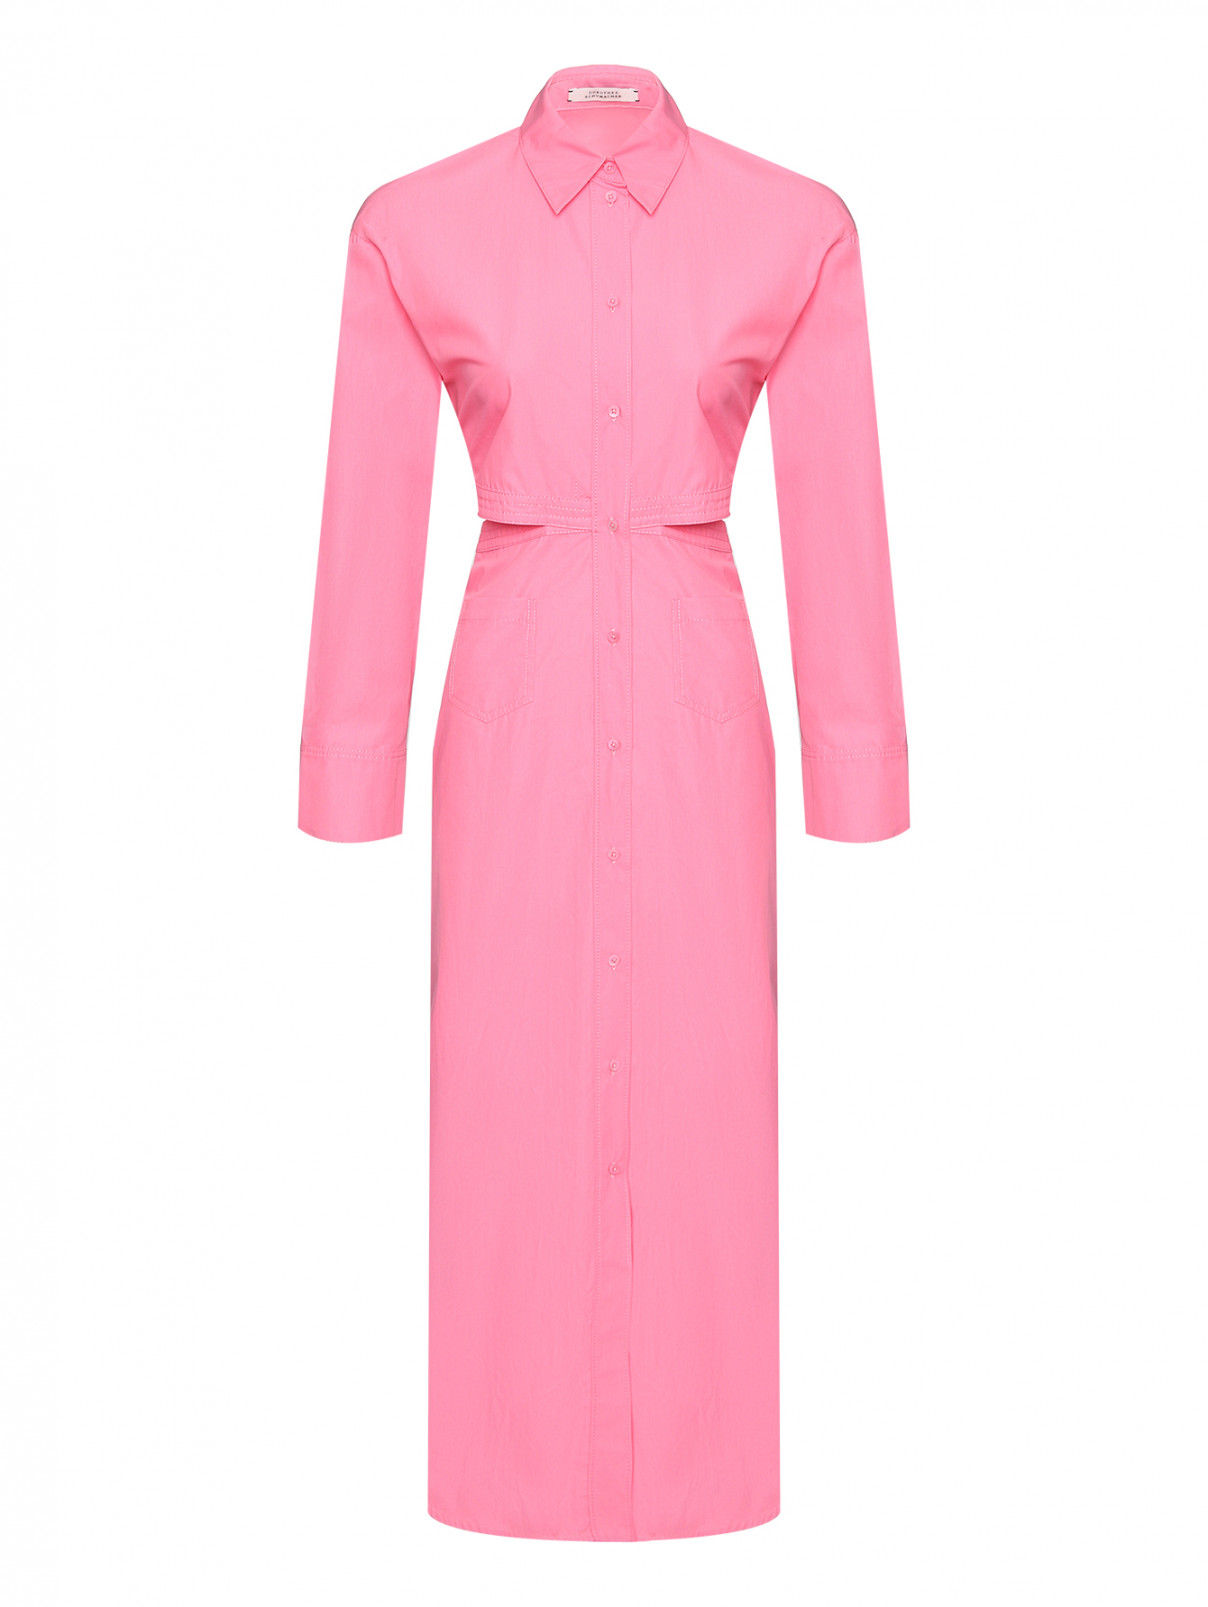 Платье из хлопка с разрезами Dorothee Schumacher  –  Общий вид  – Цвет:  Розовый